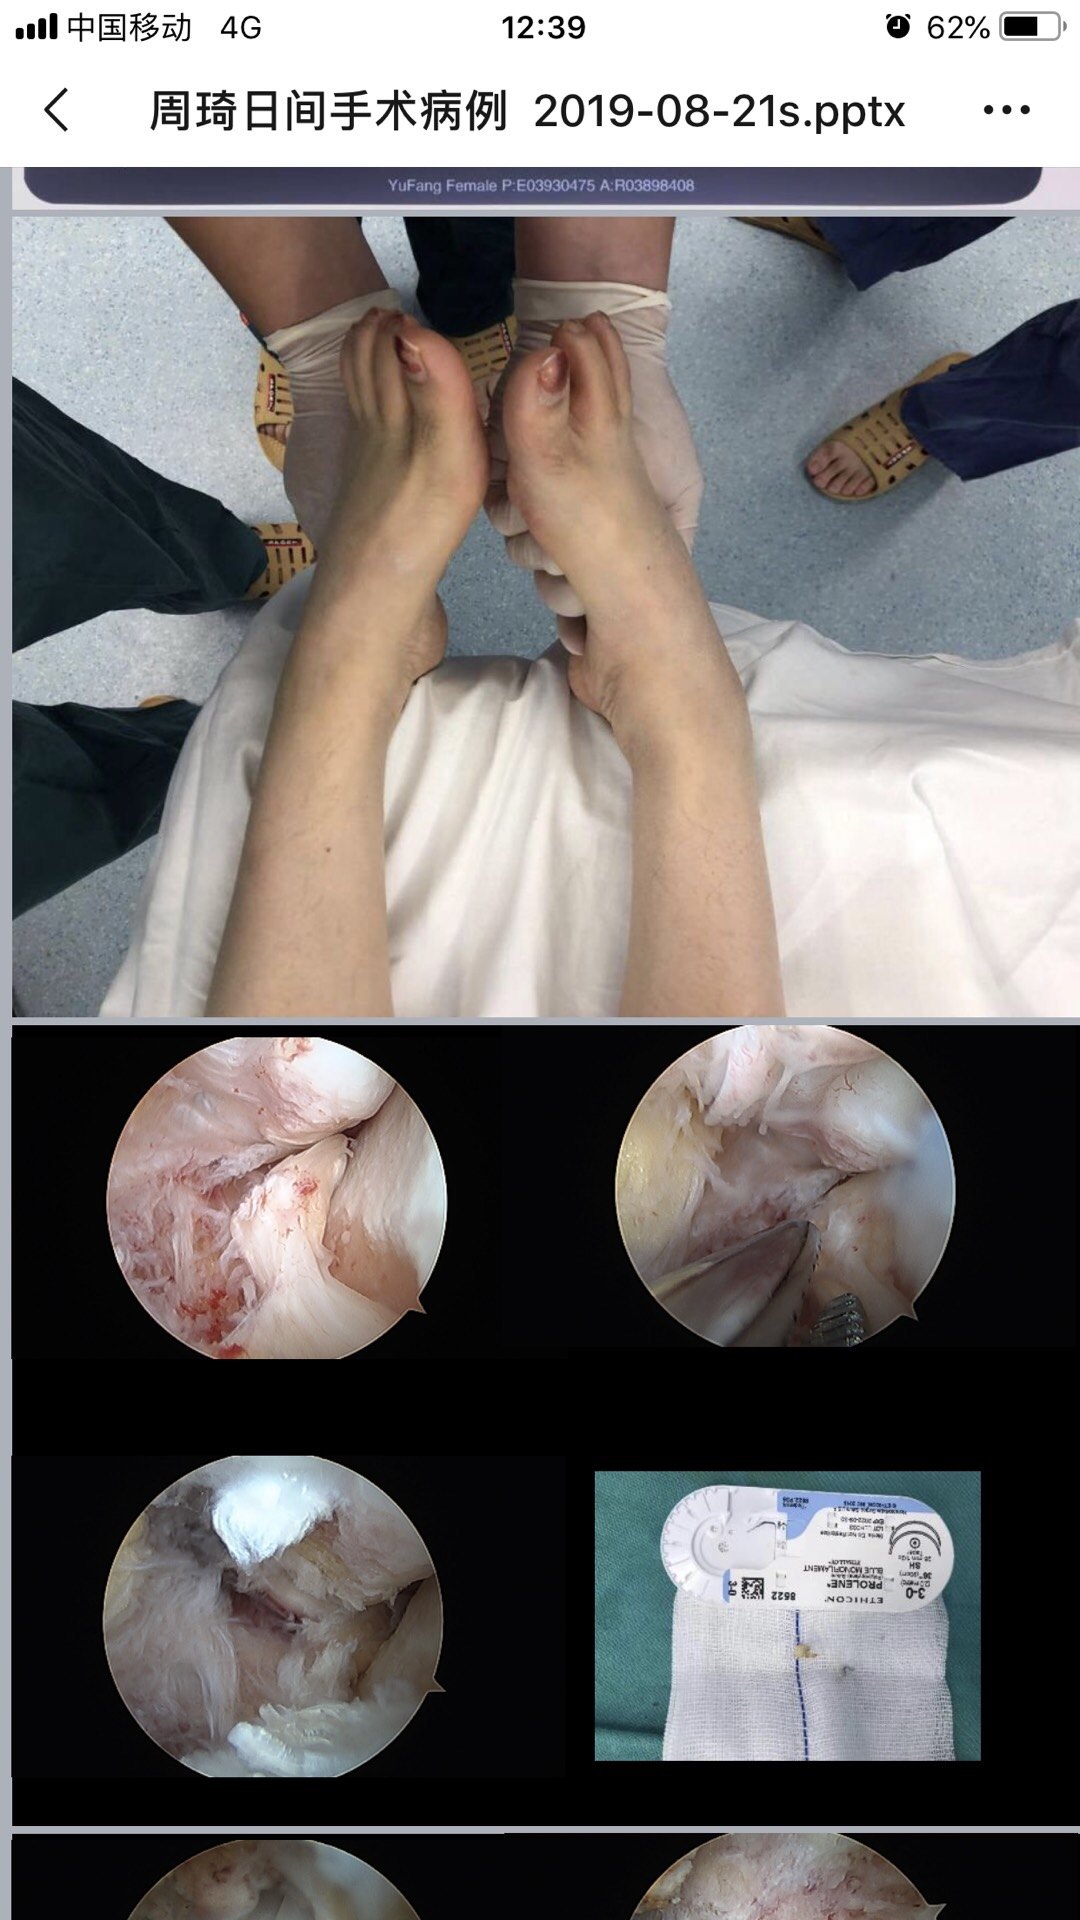 严重崴脚关节镜治疗微创可靠 韧带损伤 韧带损伤治疗方法 好大夫在线